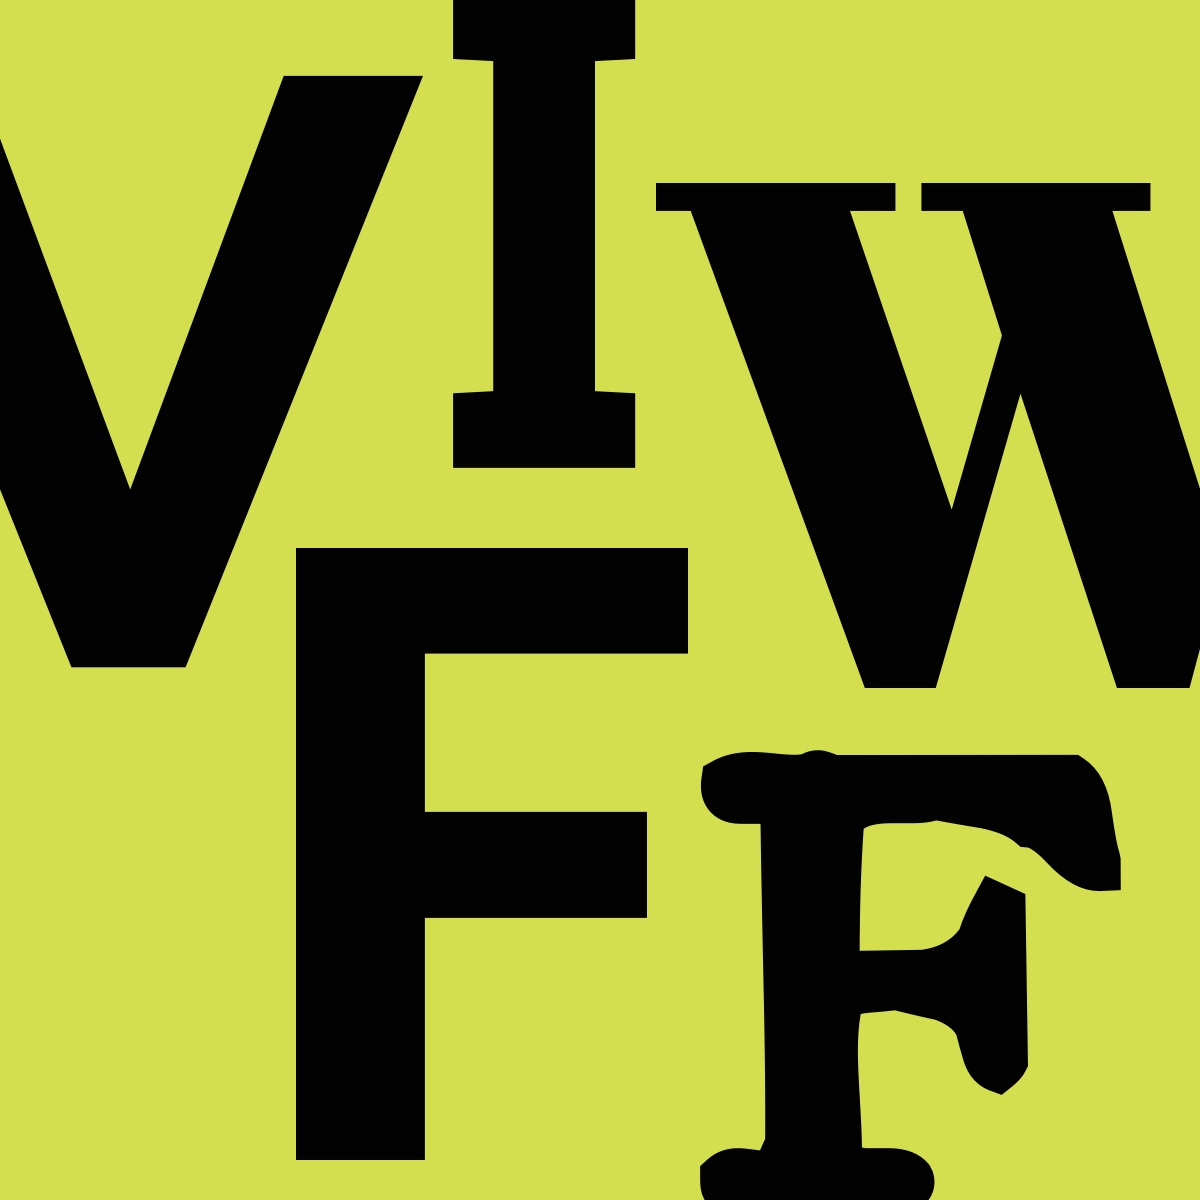 VIWFF Square Profile Pic for Social Media Graphics